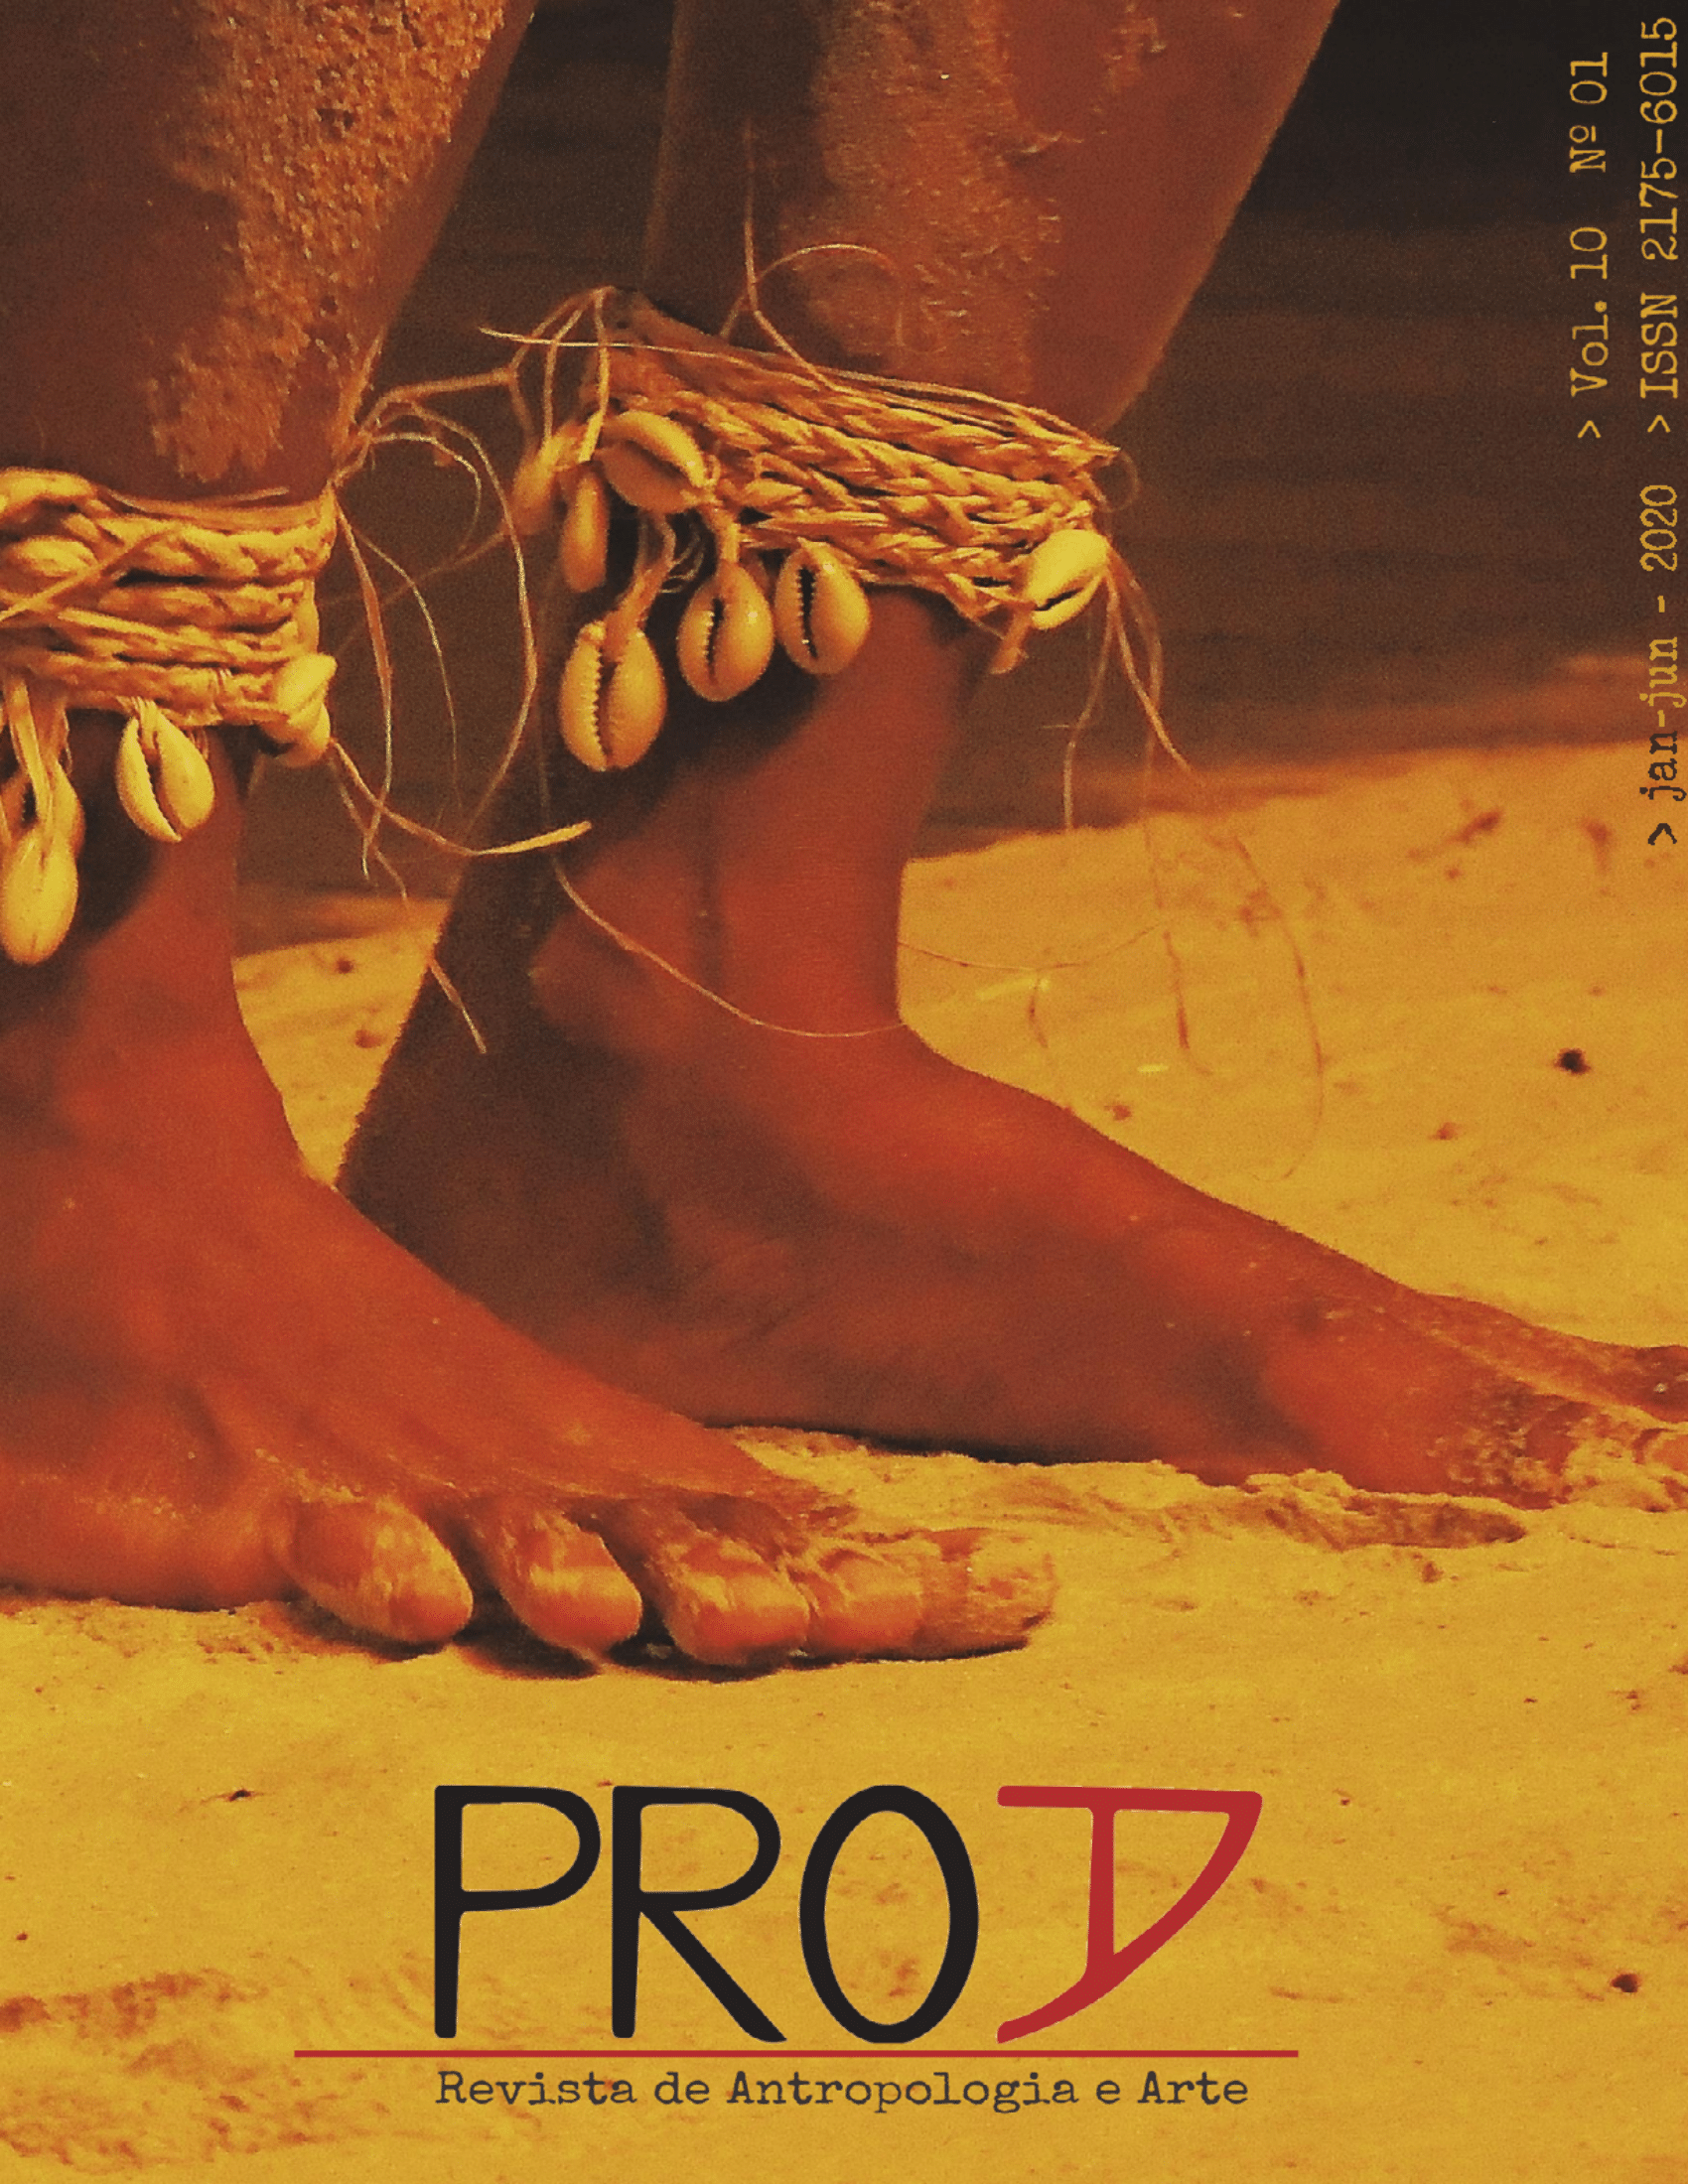 Uma foto de pés descalços com adornos de conchas nos tornozelos em meio a areia, com a marca da revista exibida na parte inferior central da imagem.